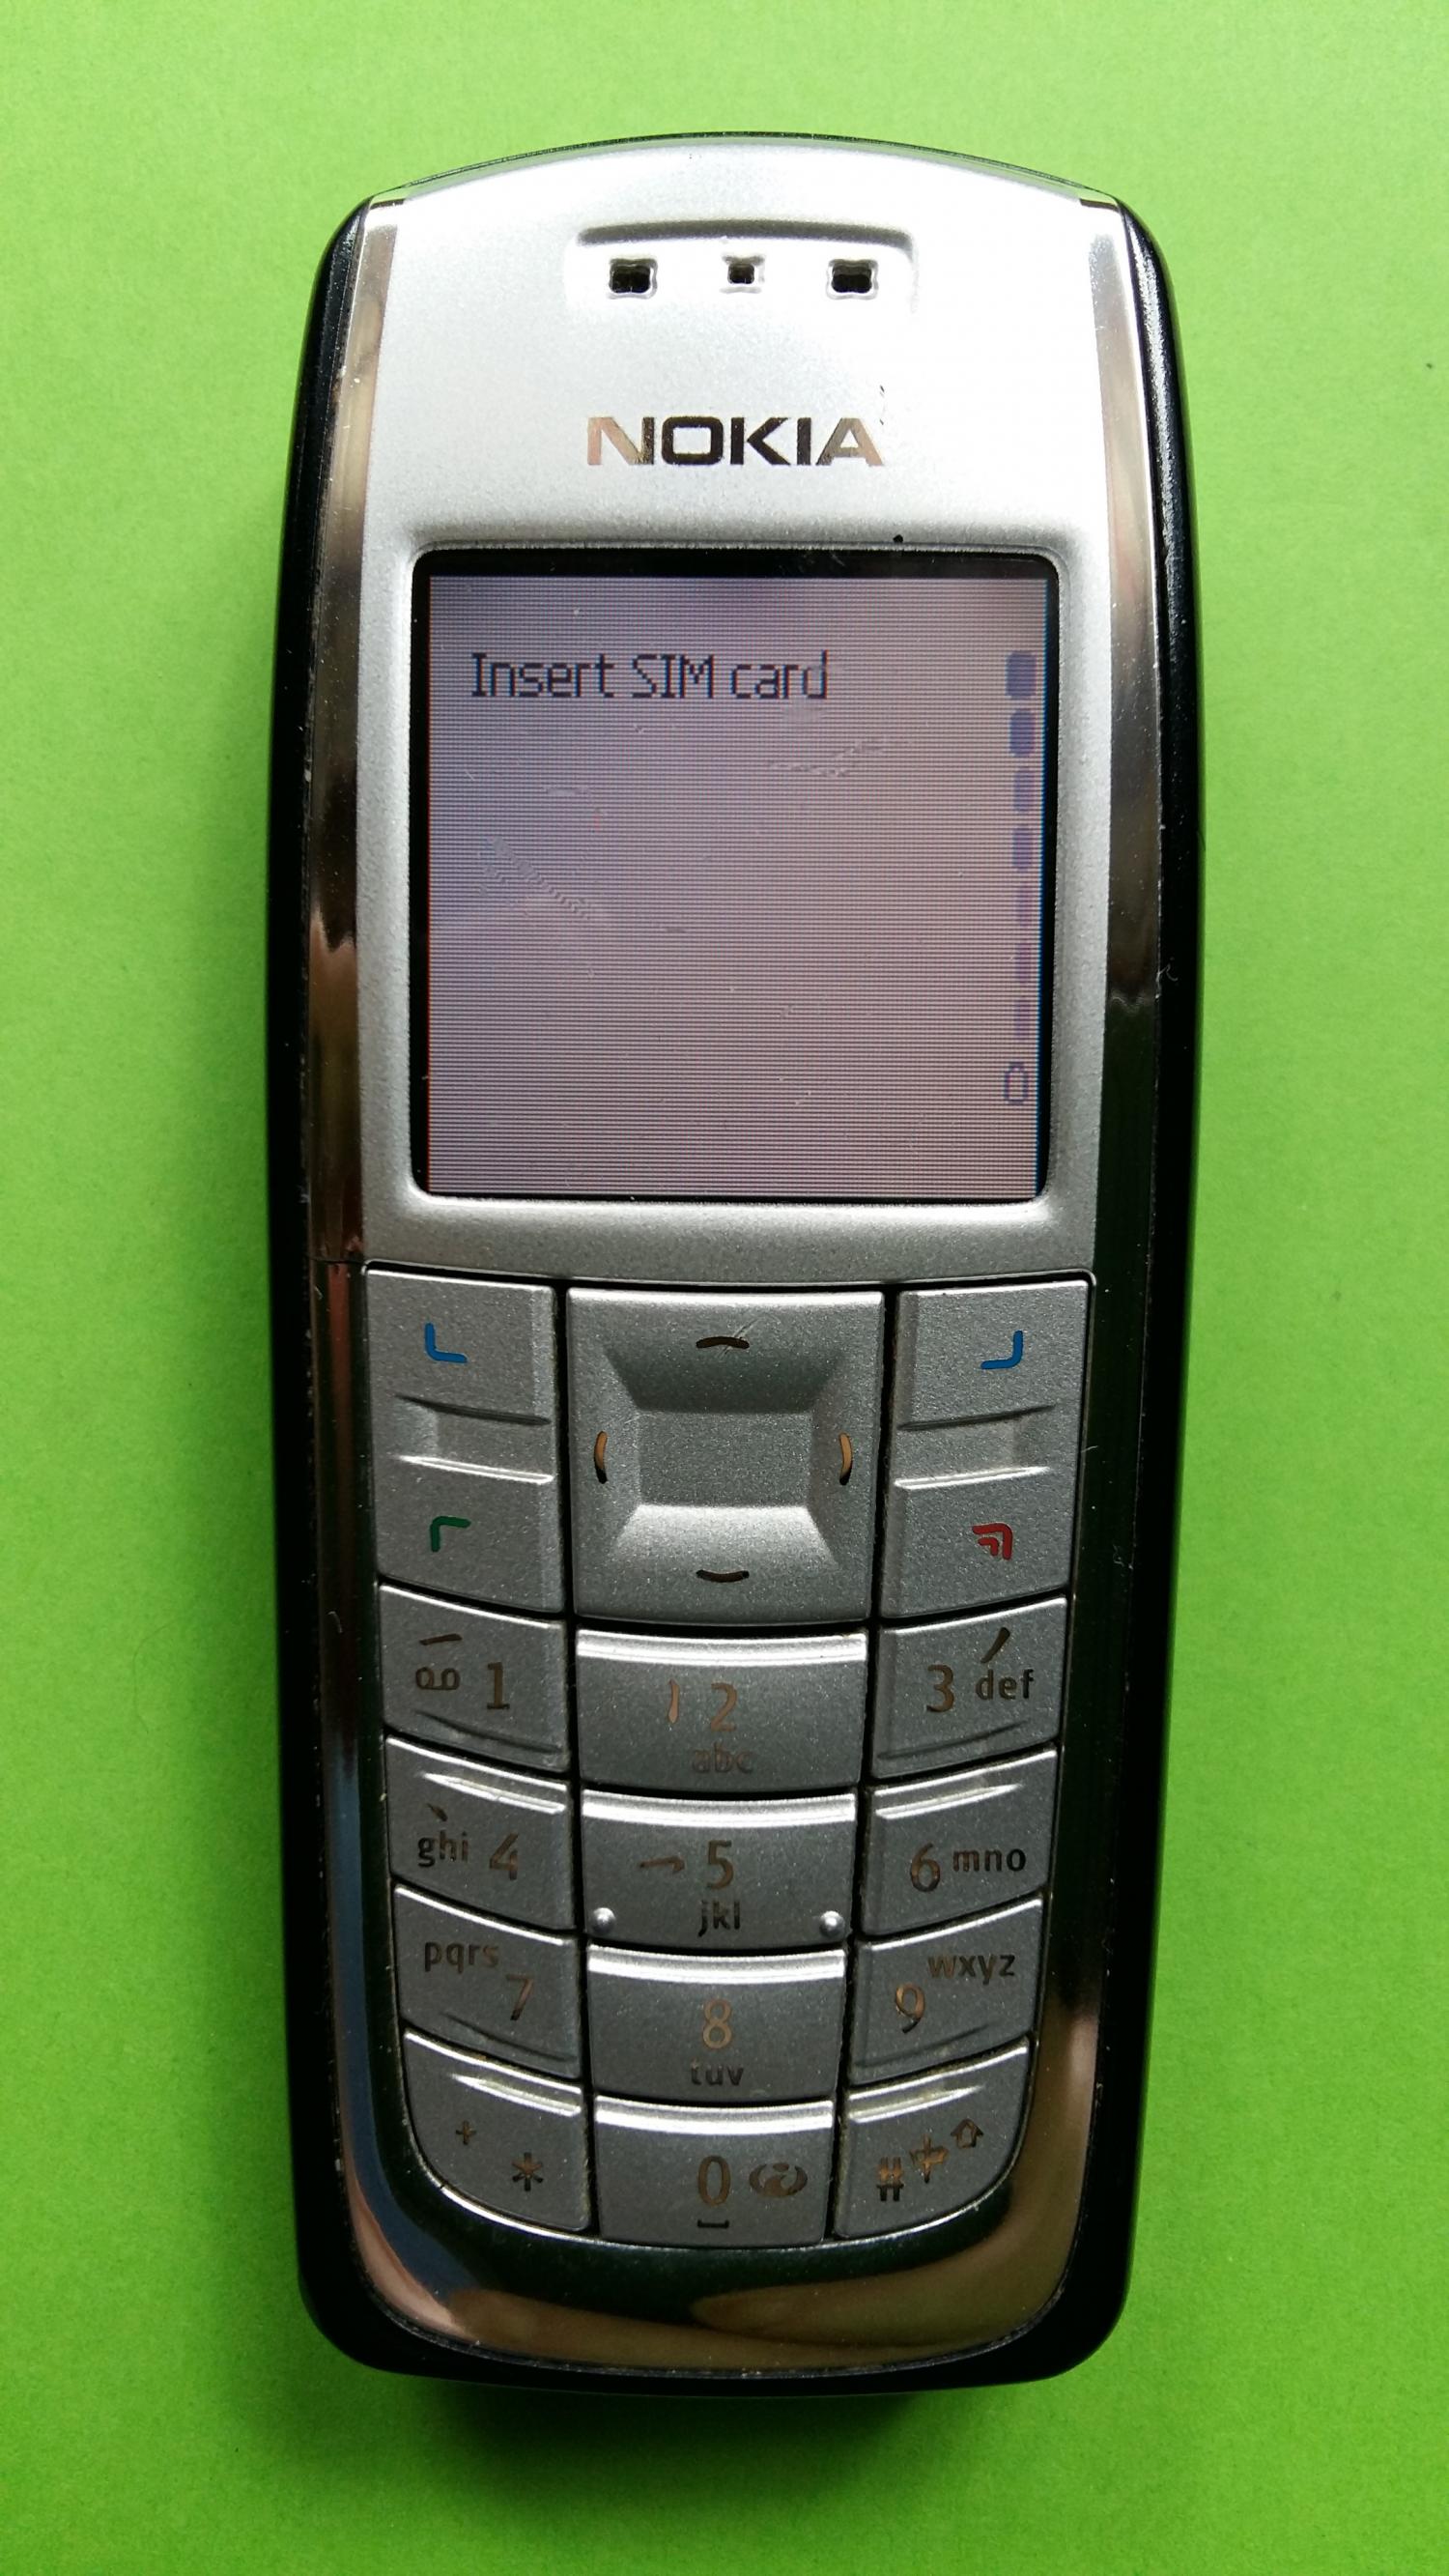 image-7304711-Nokia 3120 (2)1.jpg